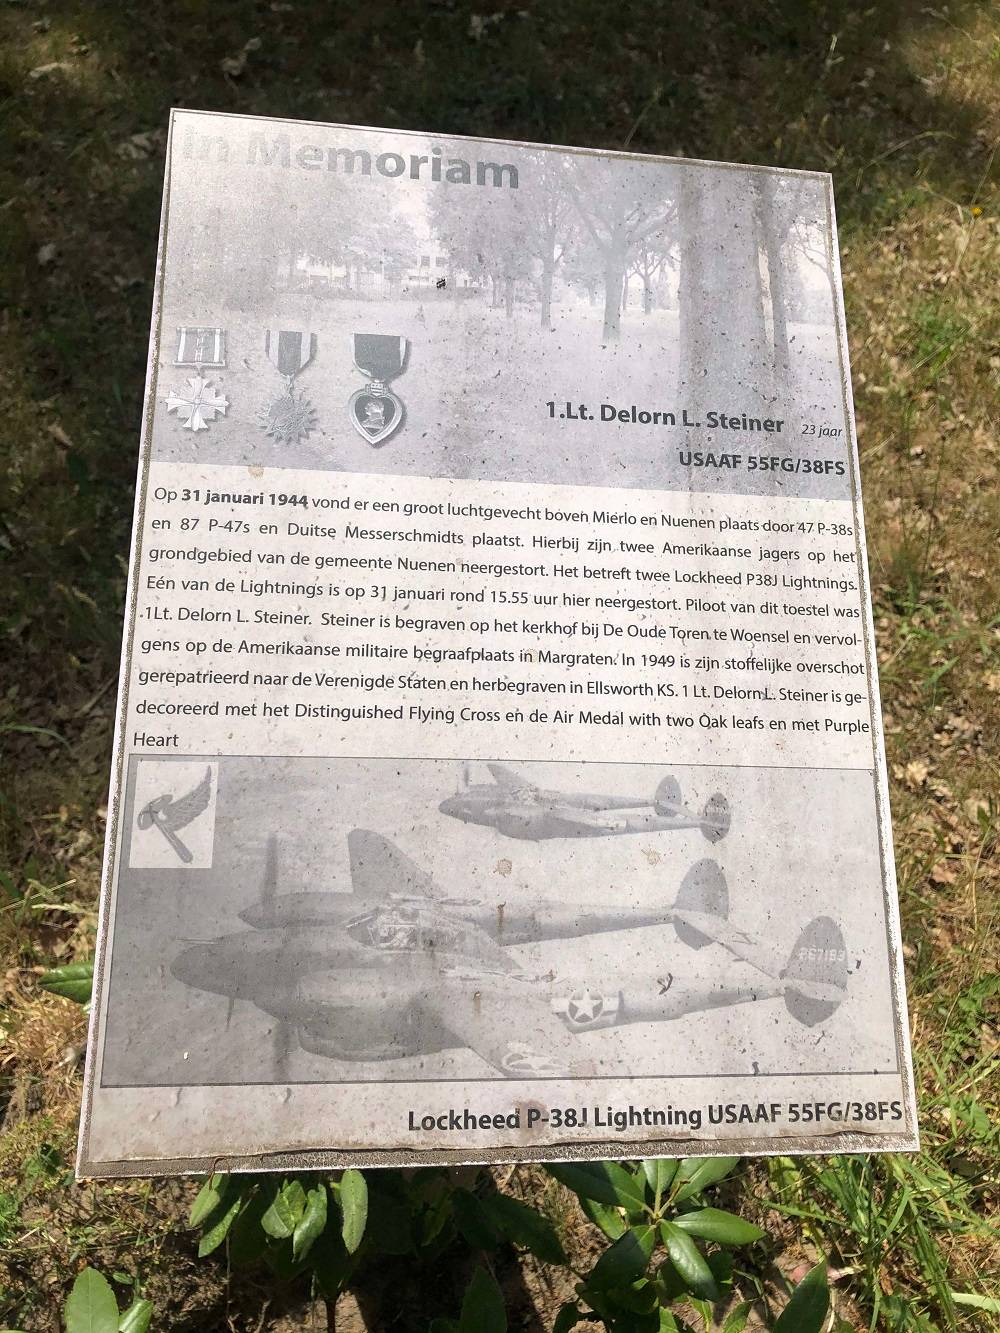 In Memoriam: Crashlocatie P-38 Lightning 1. Lt. Delorn Lee Steiner #2